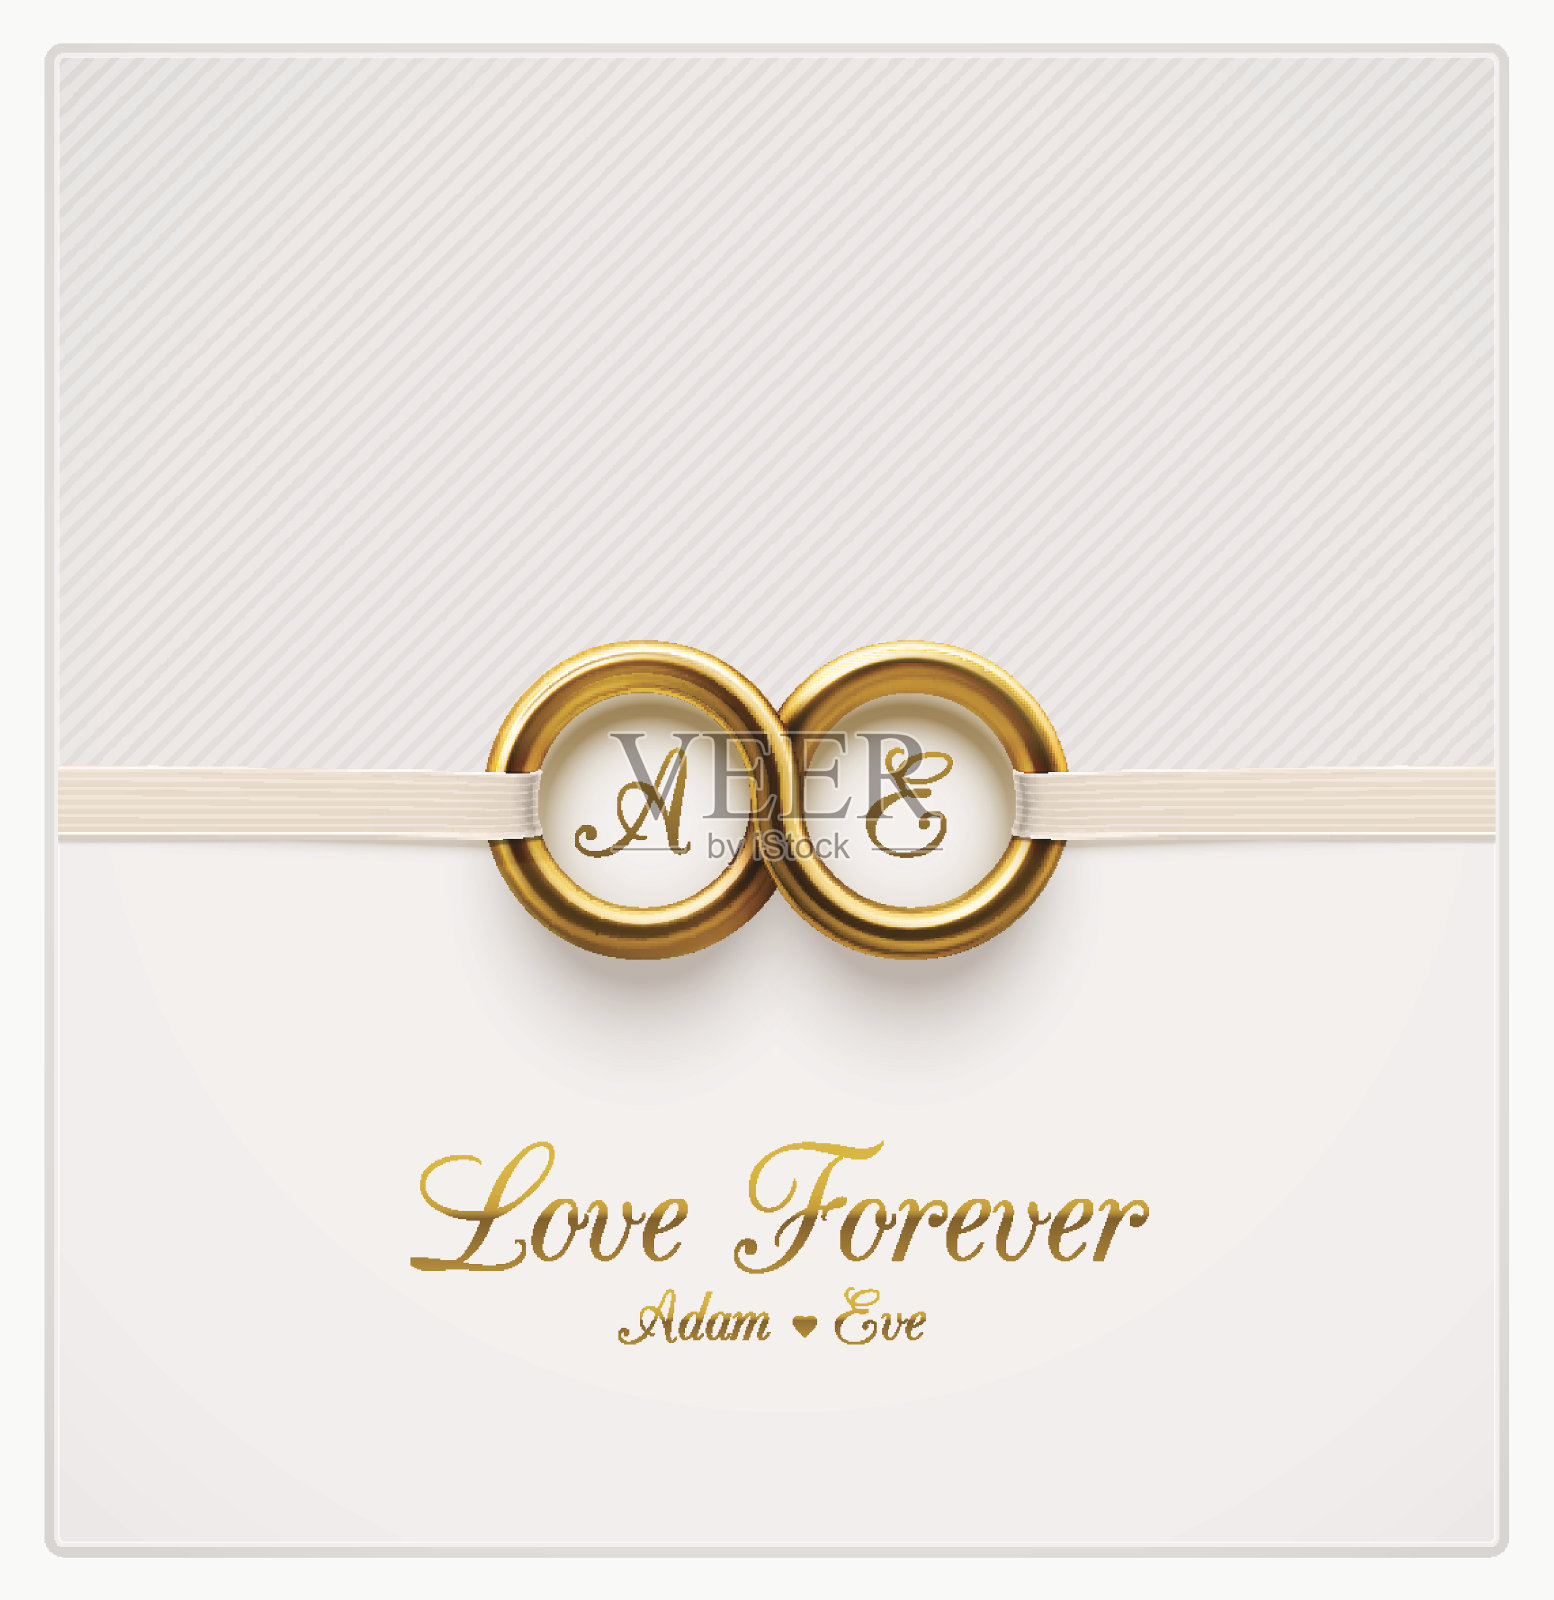 婚礼请柬白色背景和两个金戒指设计模板素材